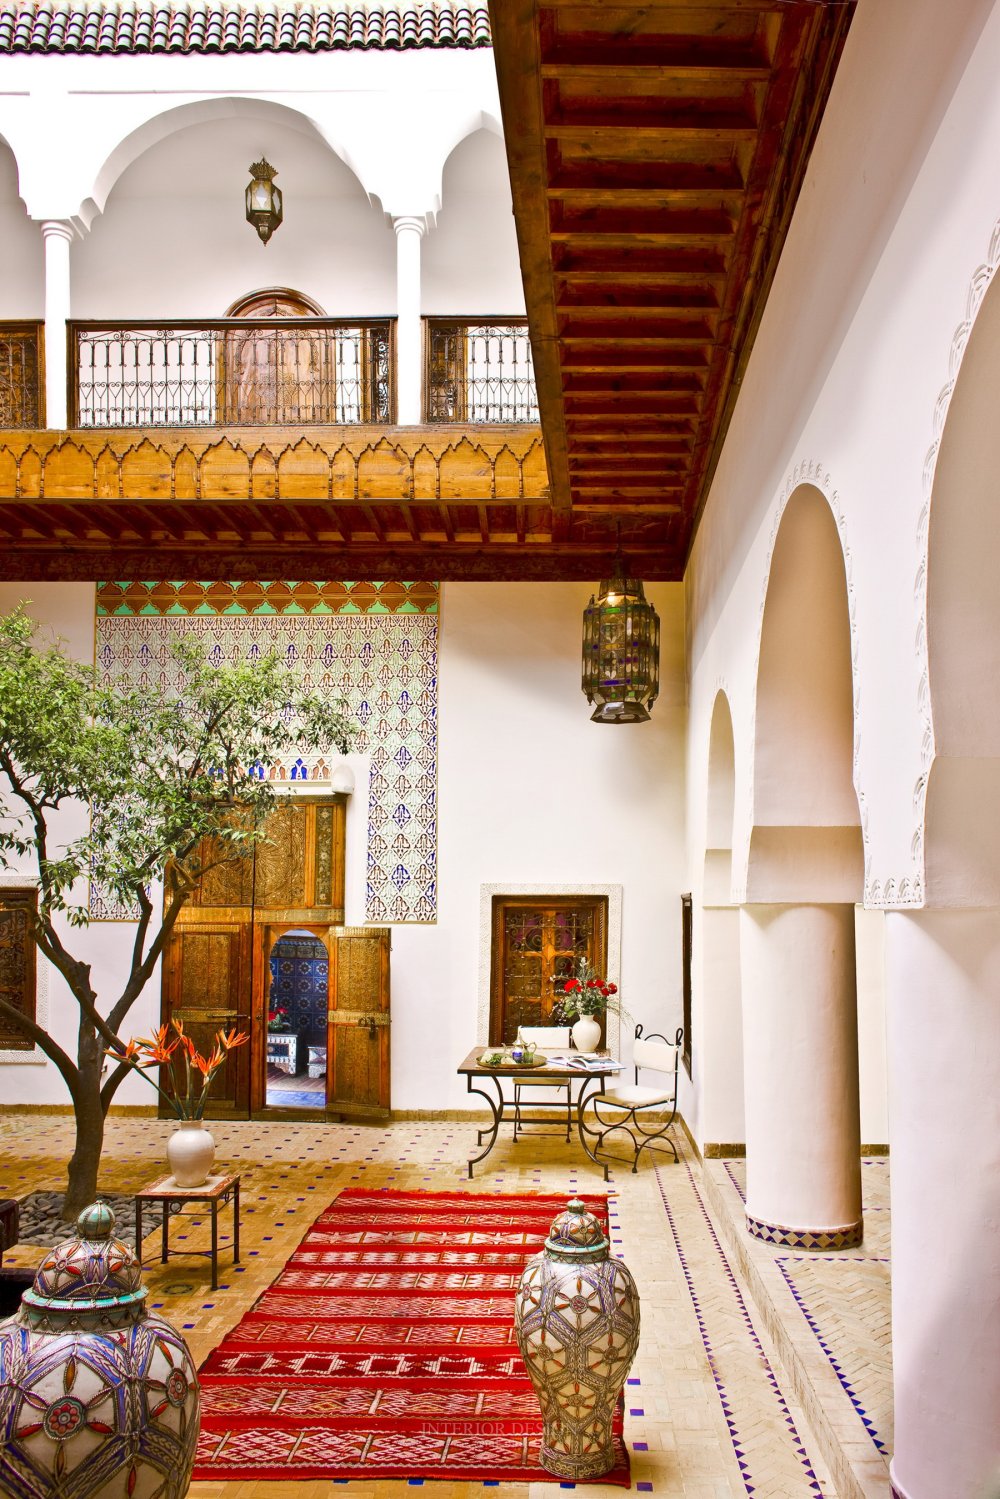 摩洛哥马拉喀什悦椿度假酒店 Angsana Riads Collection Morocco_27798132-H1-ANMK_RiadAida_Courtyard.jpg